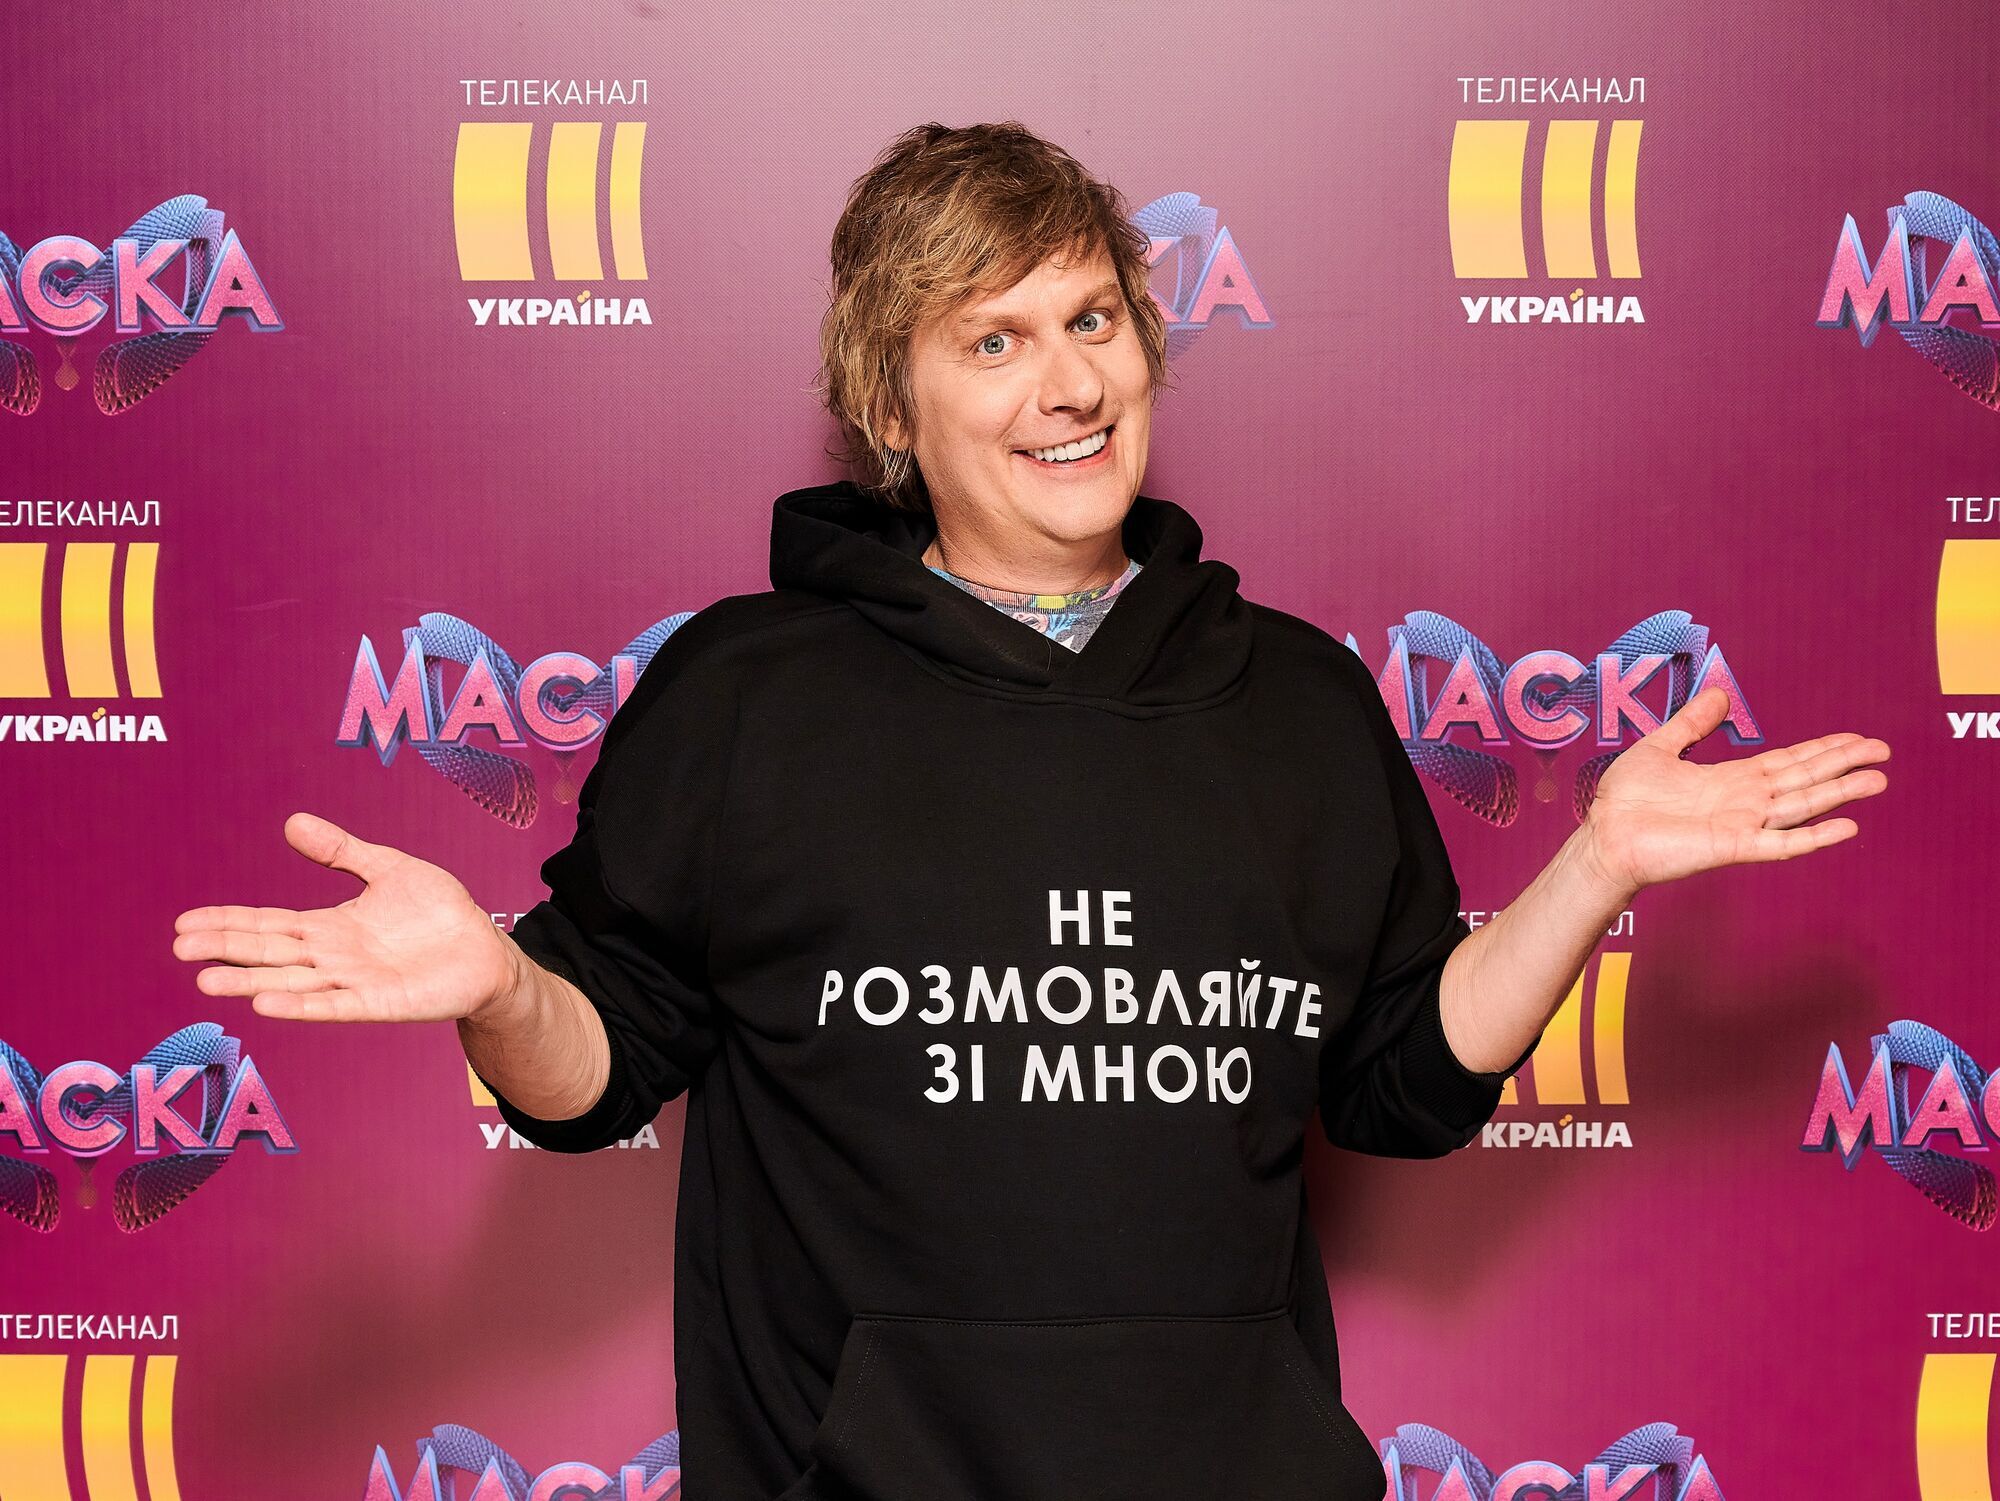 Степан Казанин на шоу "Маска"